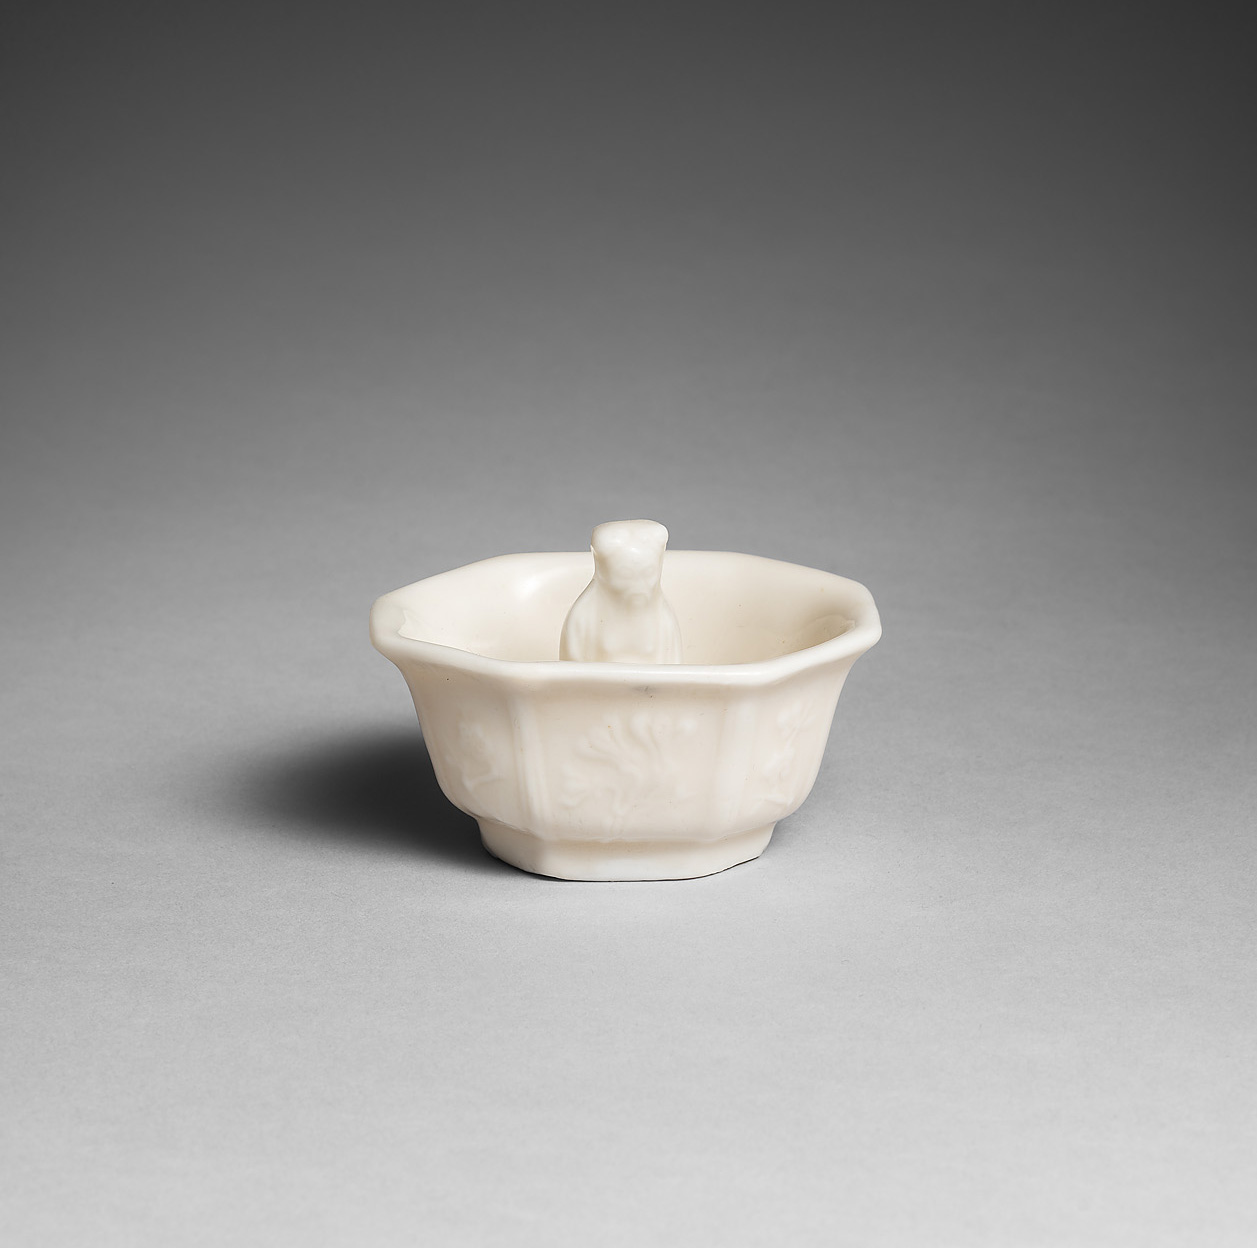 Porcelaine Fin de la dynastie Ming (1368-1644), Chine (Dehua)